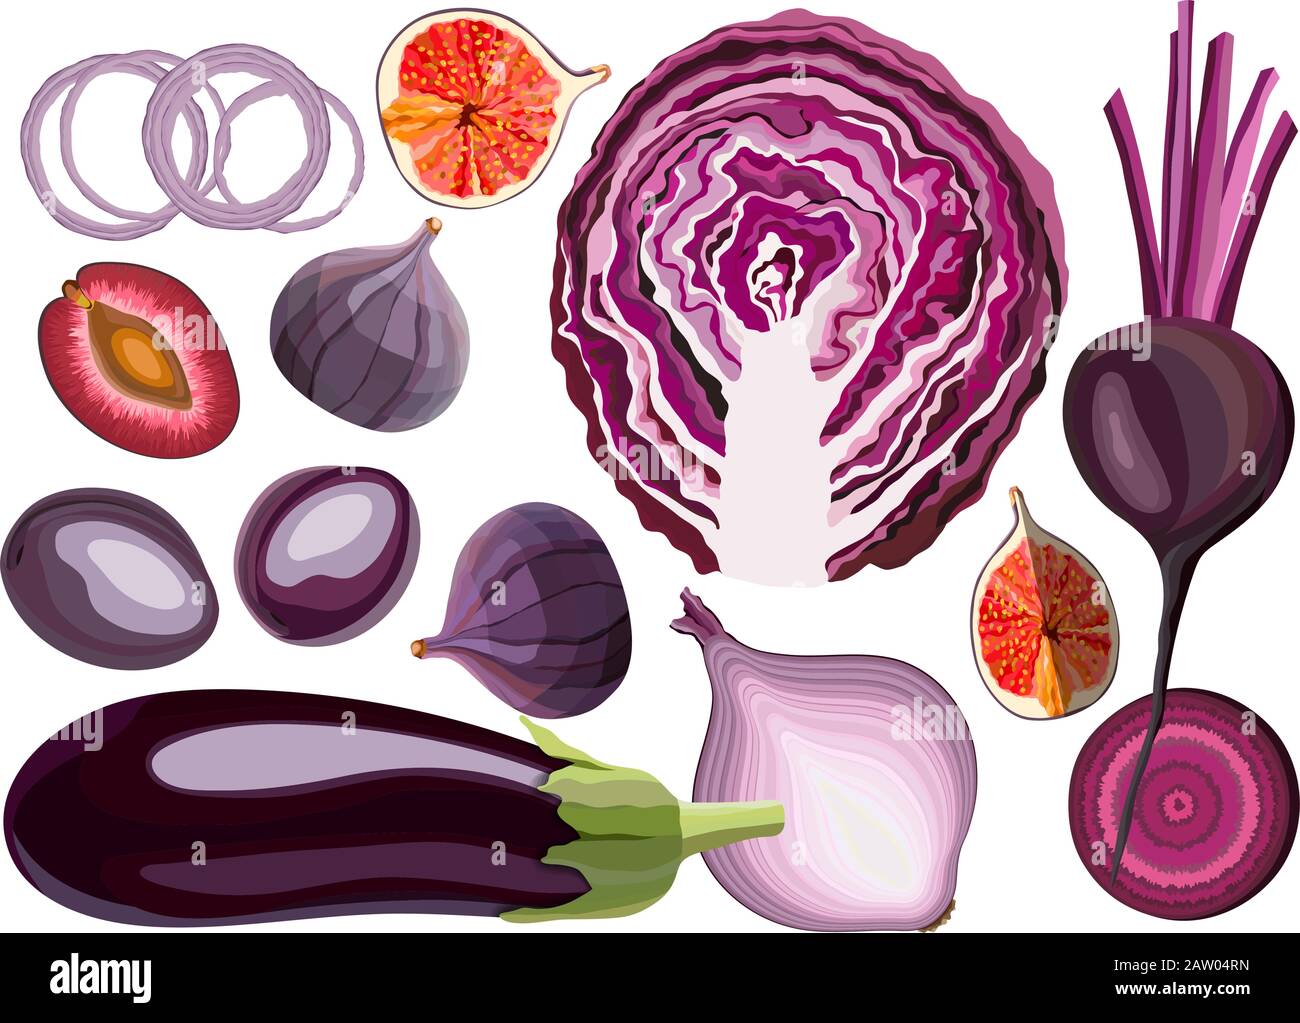 Collection de fruits et légumes de couleur violette frais crus sur fond blanc Illustration de Vecteur